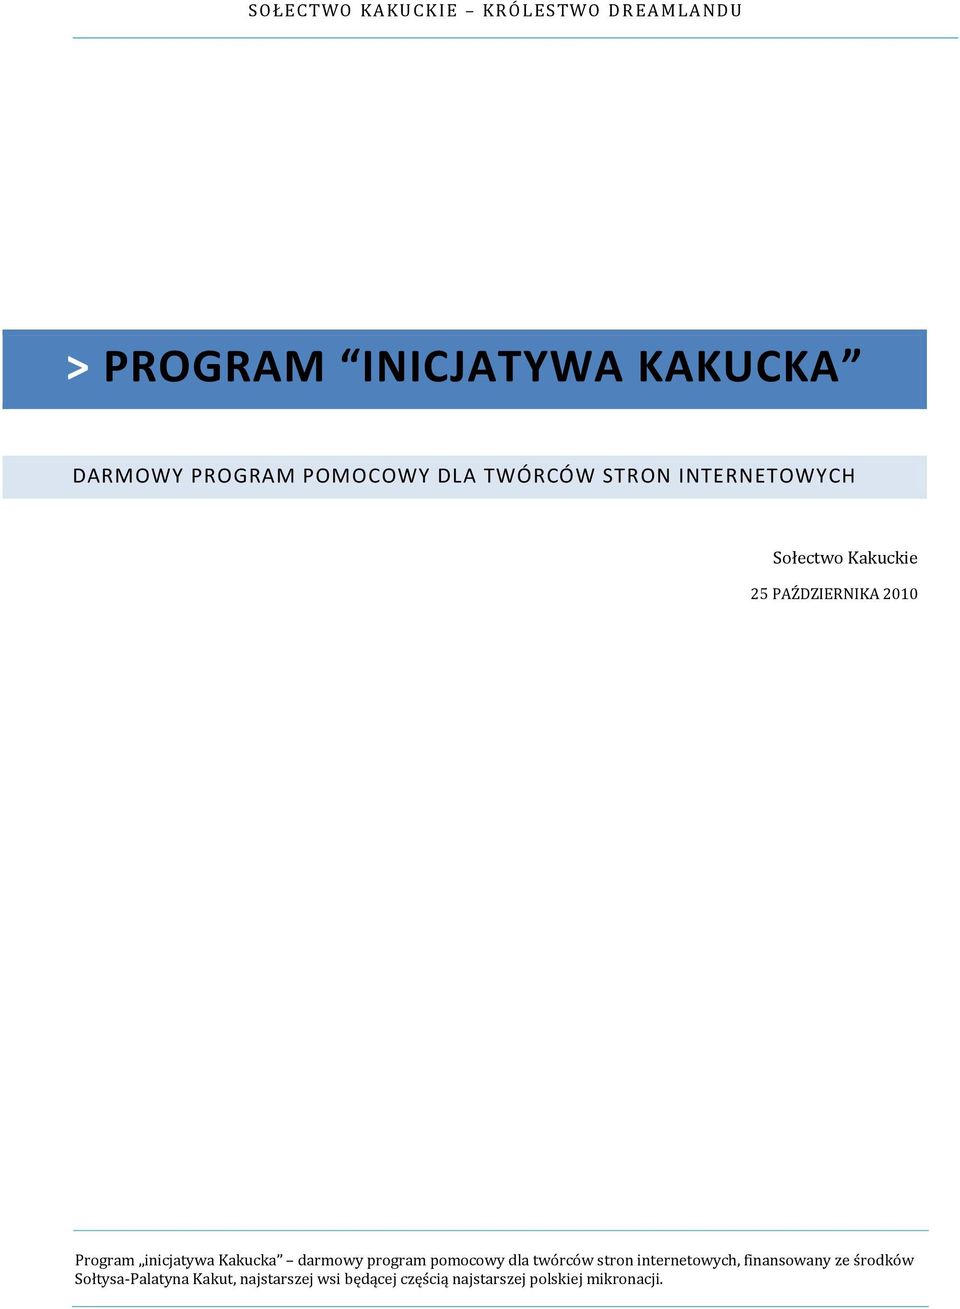 Program inicjatywa Kakucka darmowy program pomocowy dla twórców stron internetowych,